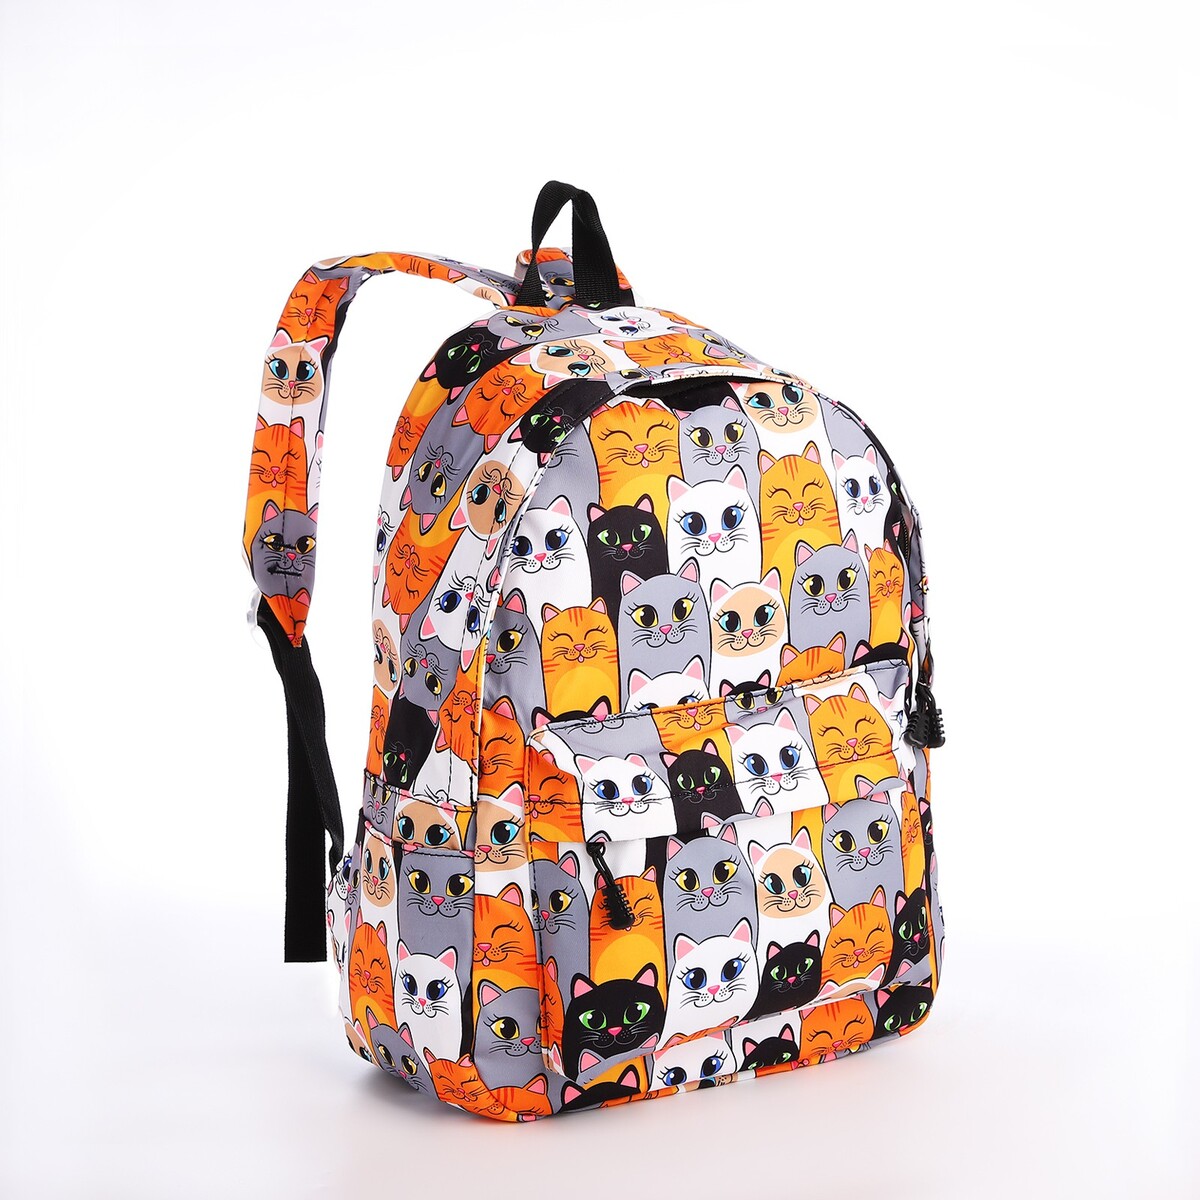 Рюкзак школьный из текстиля на молнии, 4 кармана, кошелек, цвет серый/оранжевый рюкзак школьный из текстиля 3 кармана белый голубой